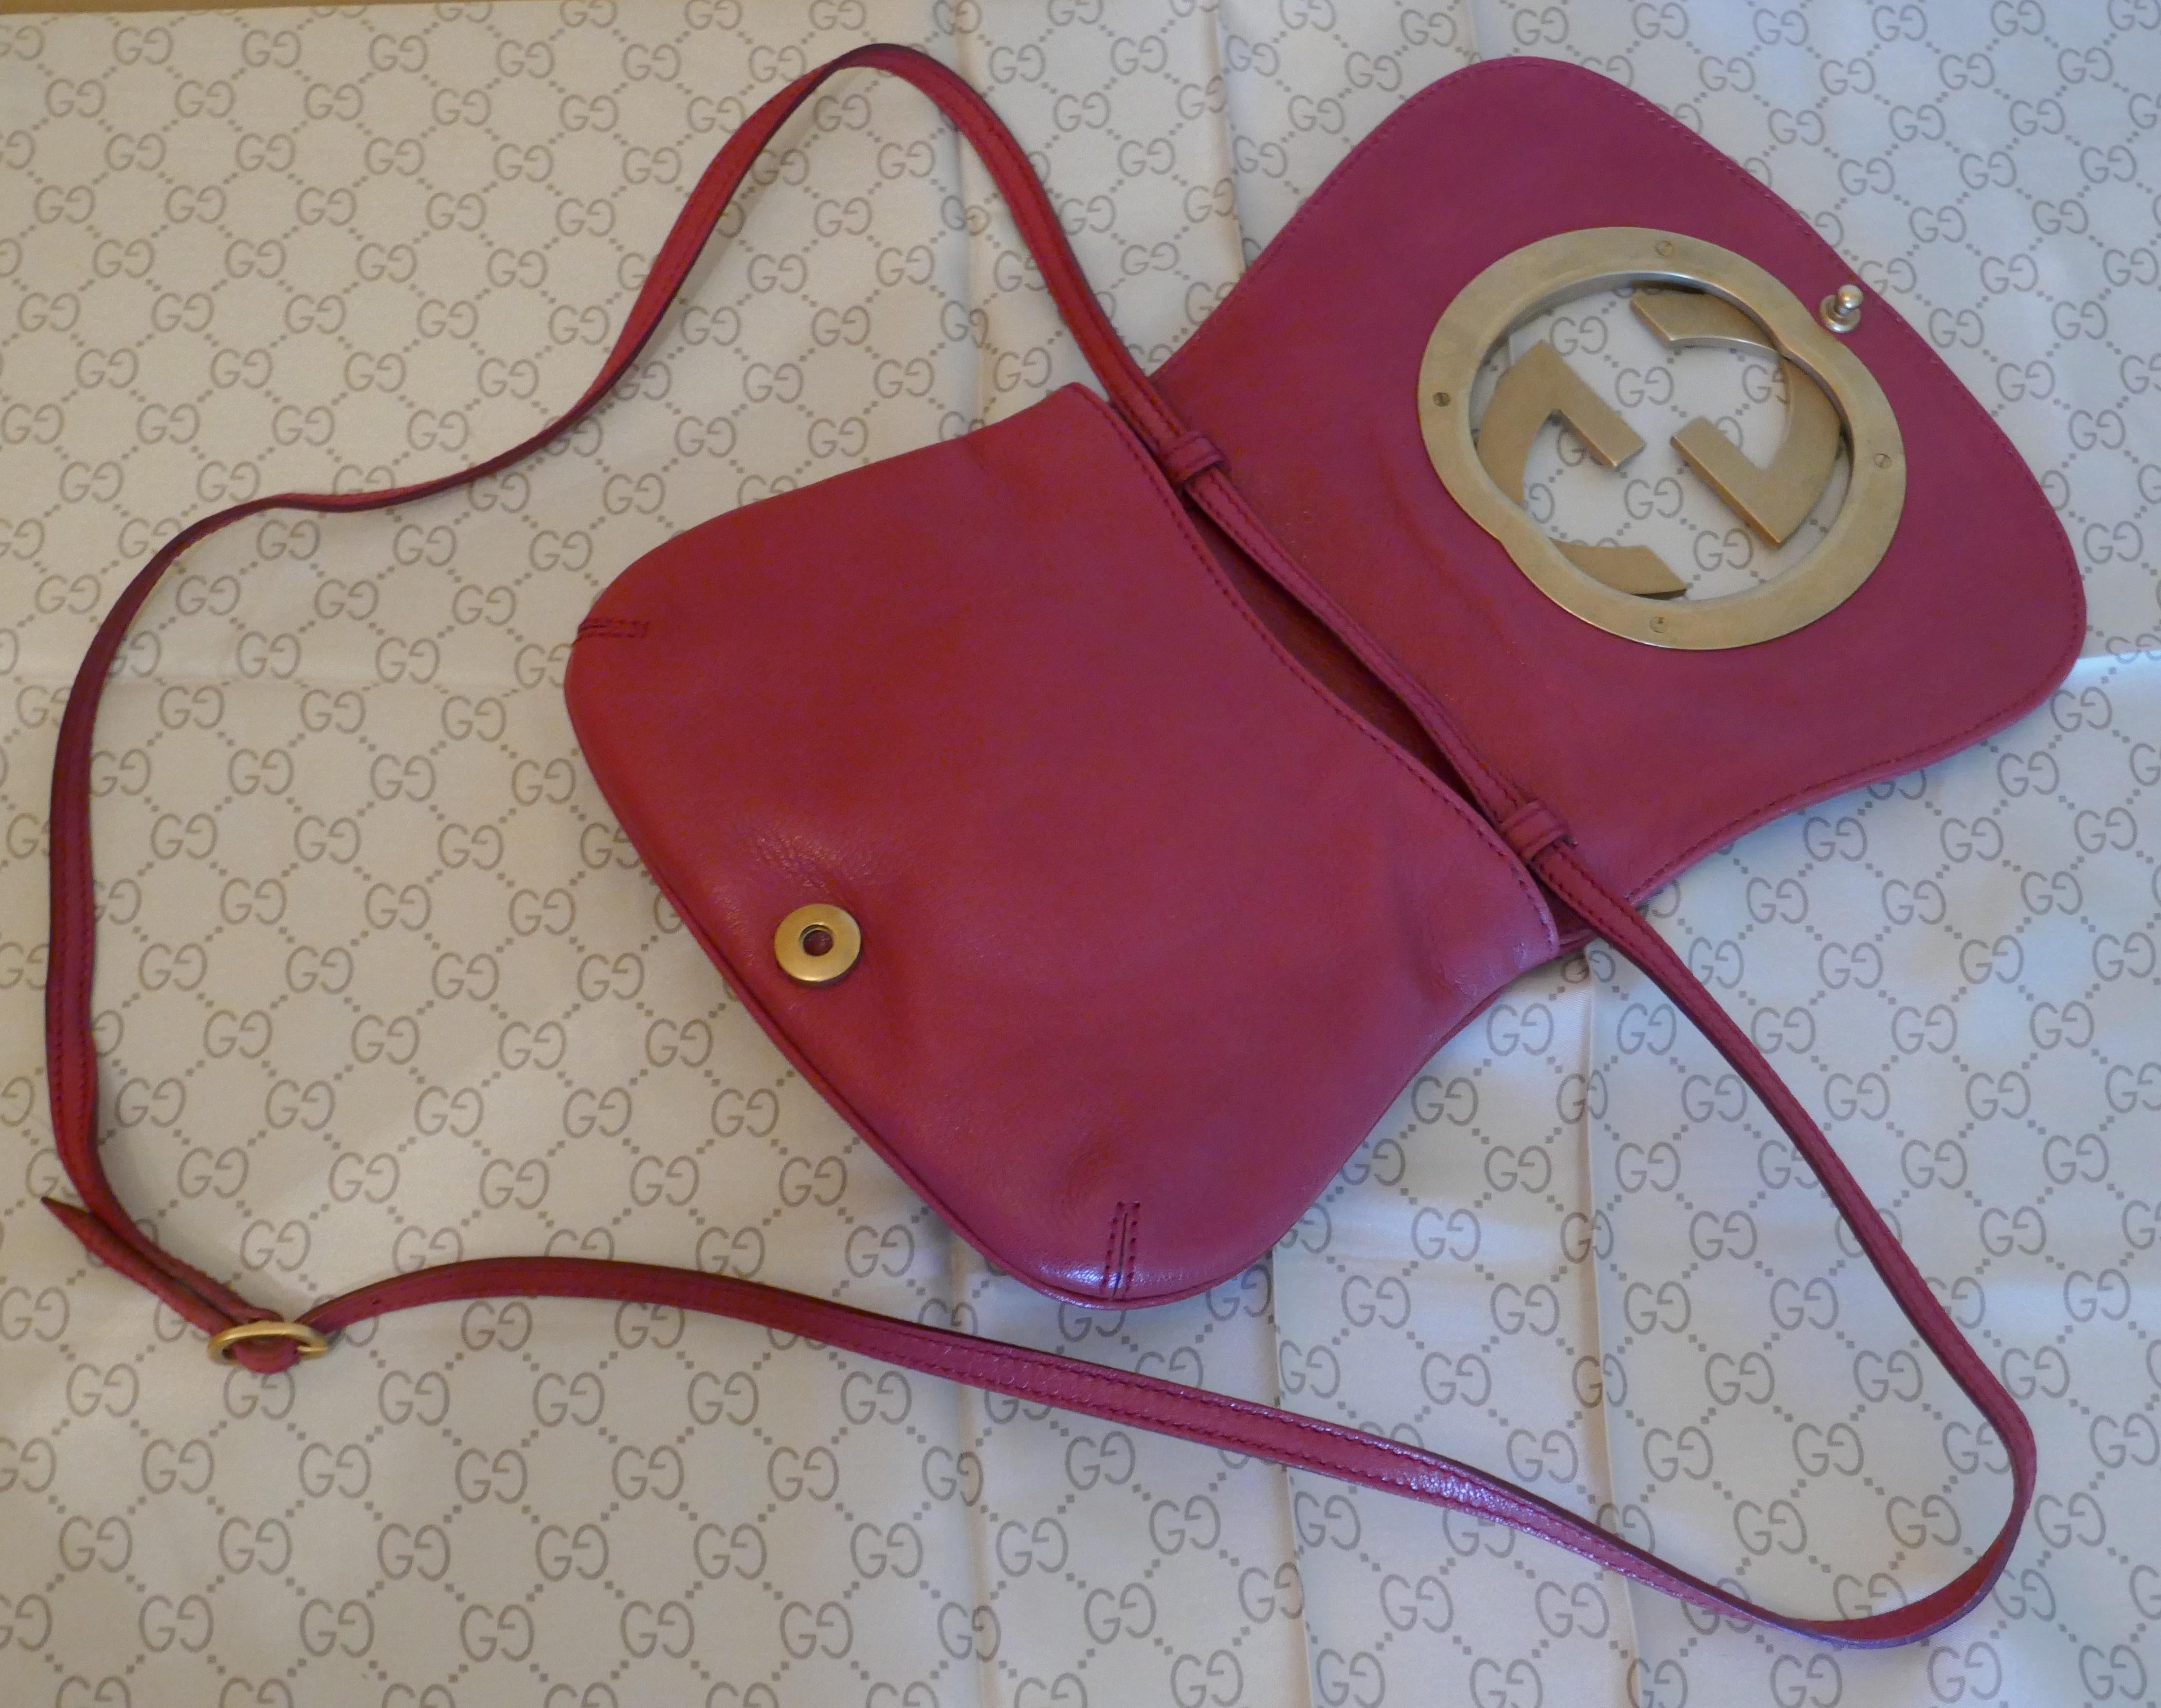 Rare Gucci Soho Pink Leather Messenger Shoulder Bag Purse For Sale at ...